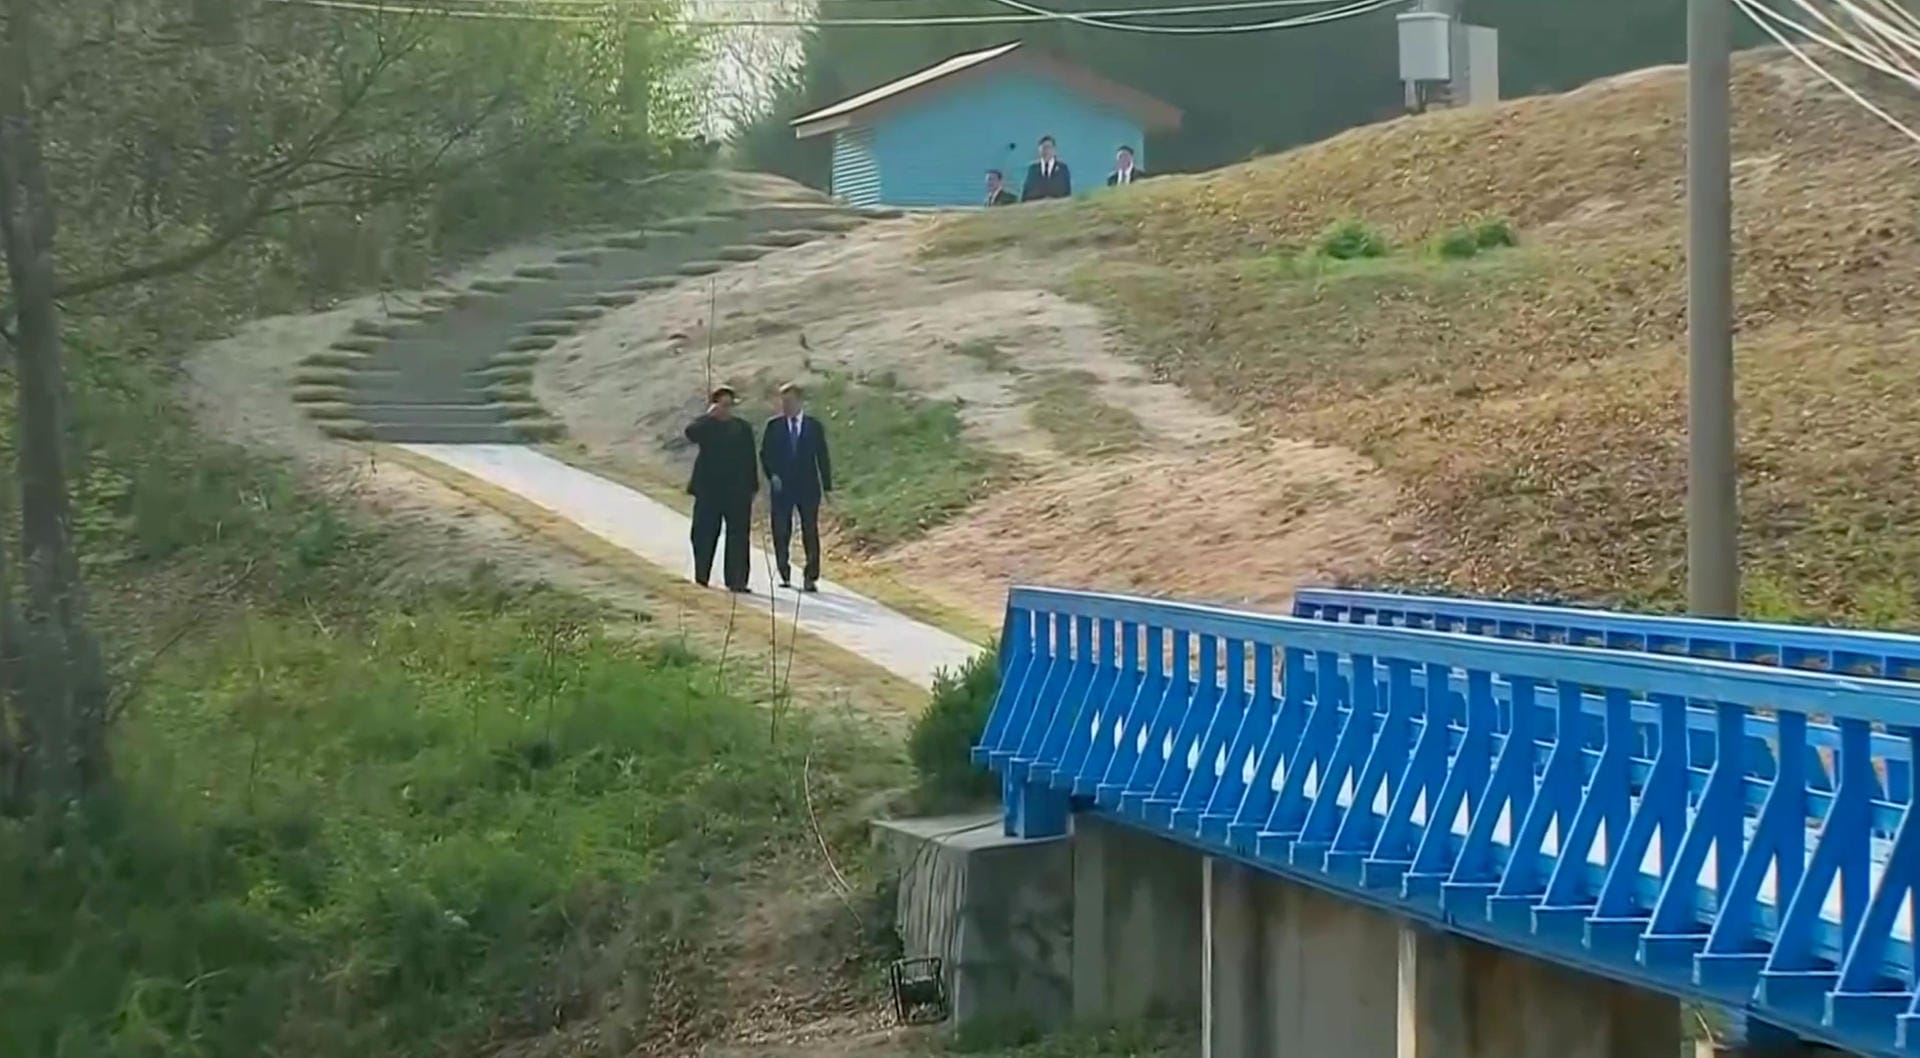 Danach sprachen Kim und Moon miteinander, während sie über eine nahegelegene Brücke gingen.